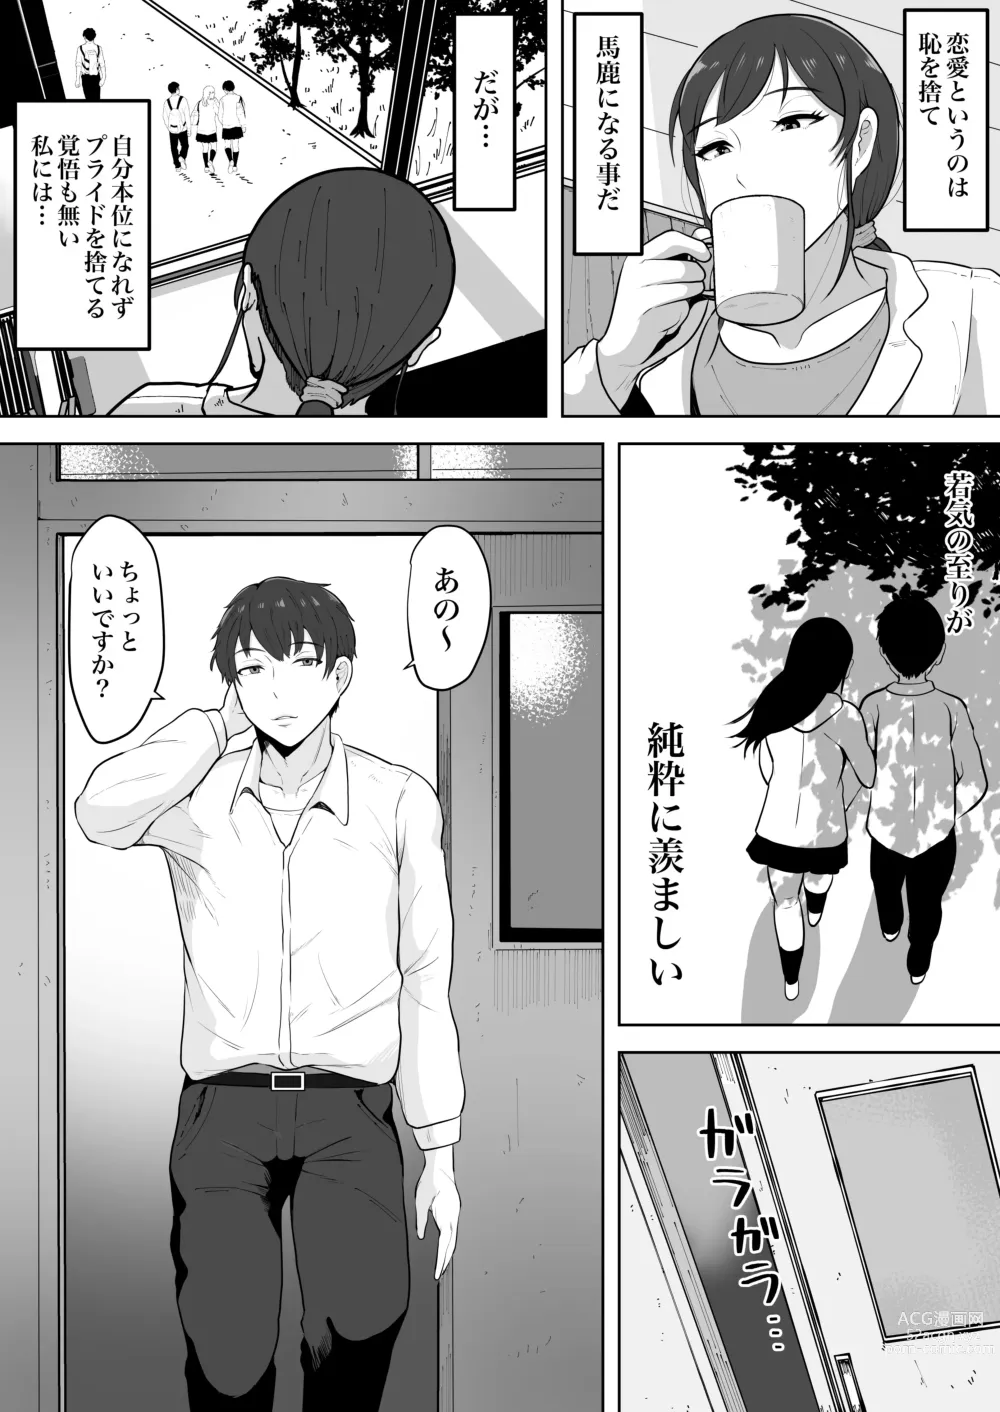 Page 4 of doujinshi Hoken no Sensei Shinobu 37-sai